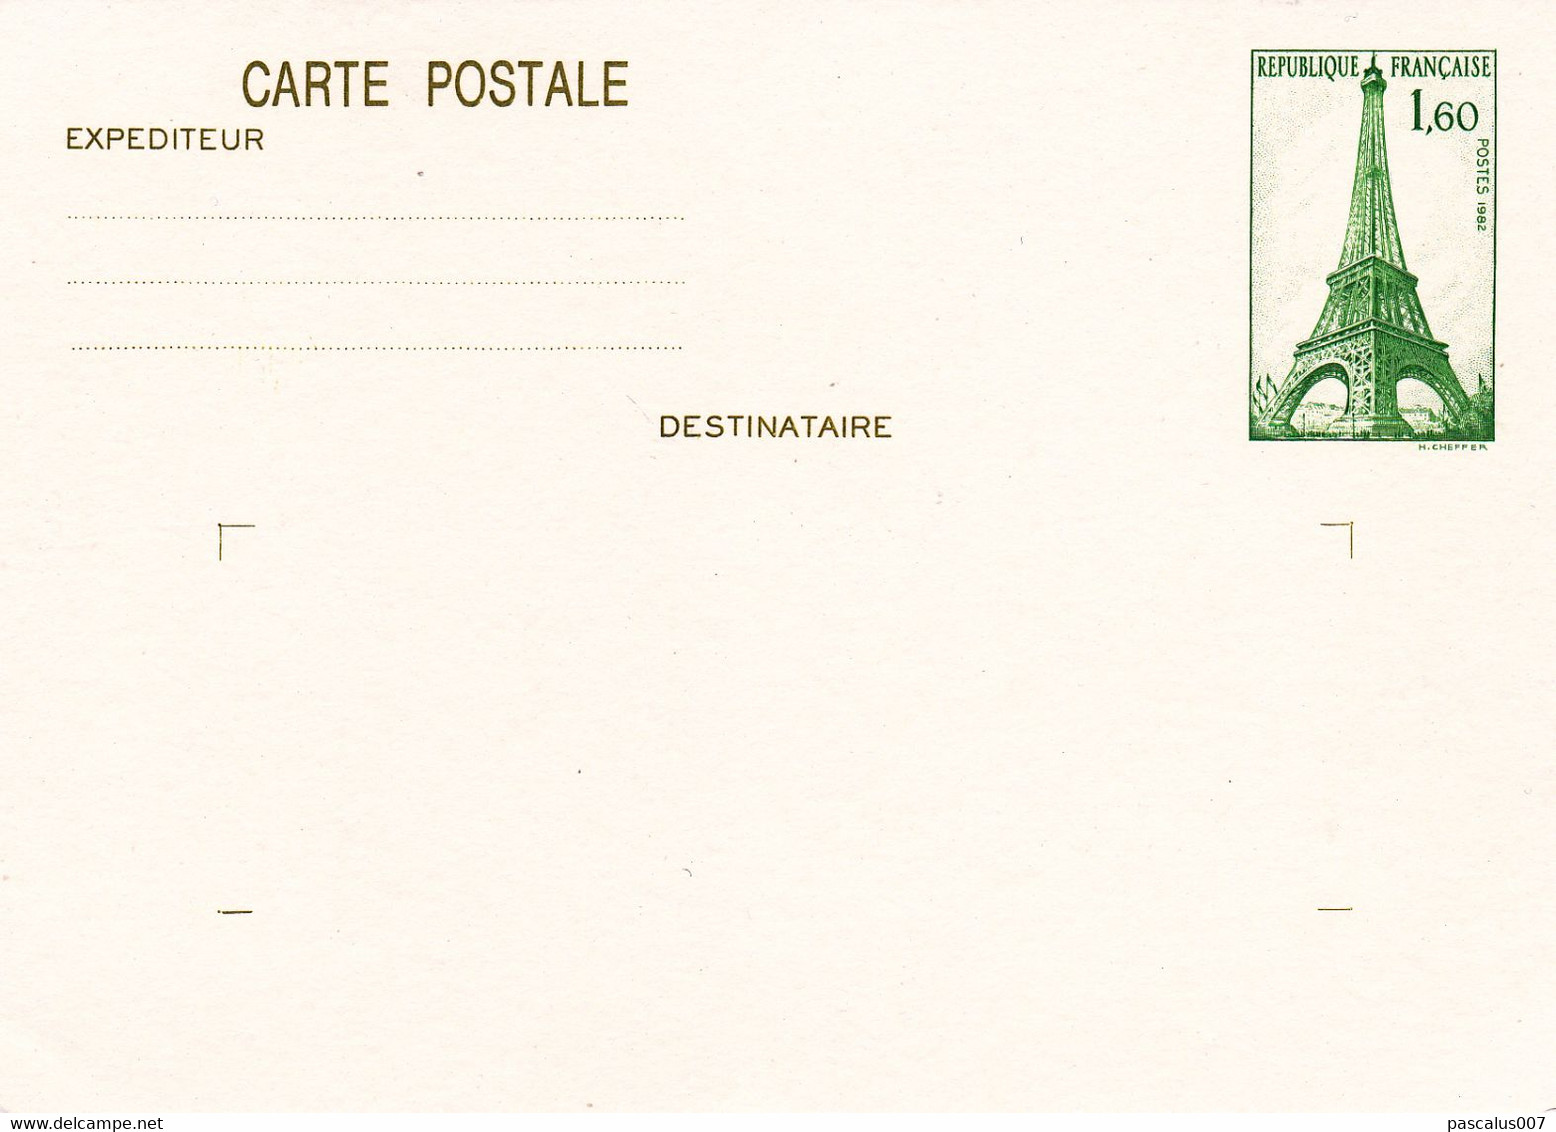 B01-373 3 Cartes Postales Entiers Postaux France 1982 Belgica Tour Eiffel - Lots Et Collections : Entiers Et PAP